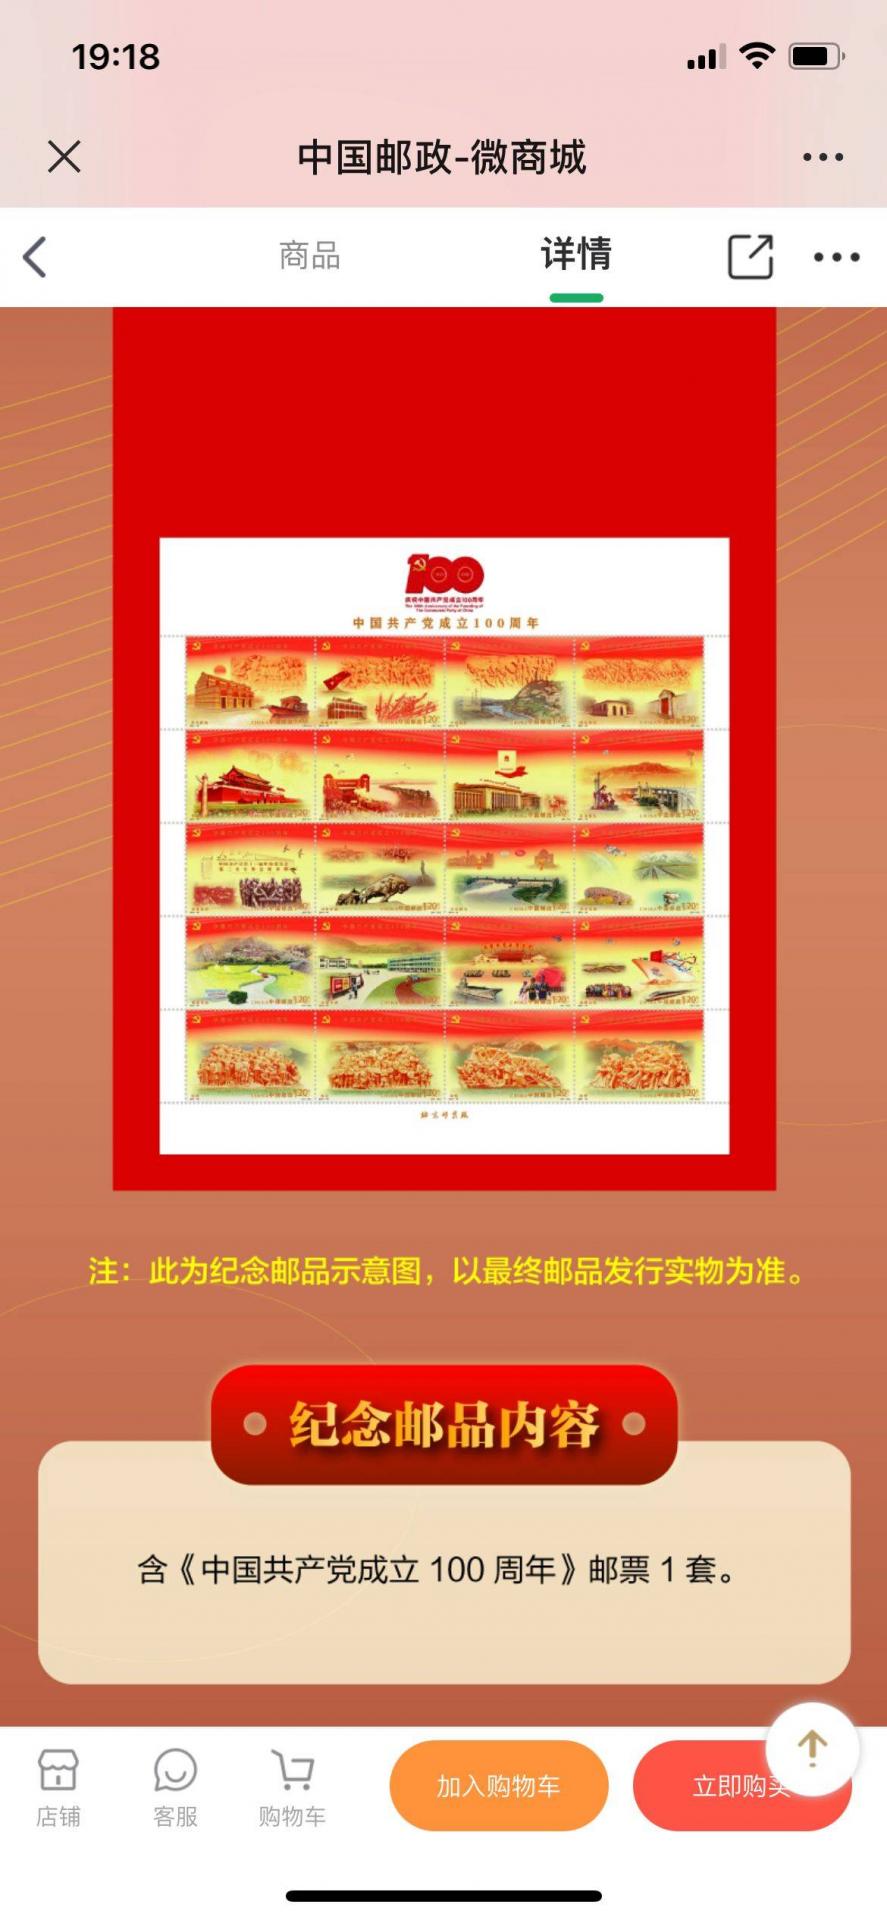 建党100周年纪念邮折，含《中国共产党成立100周年》纪念邮票一套！